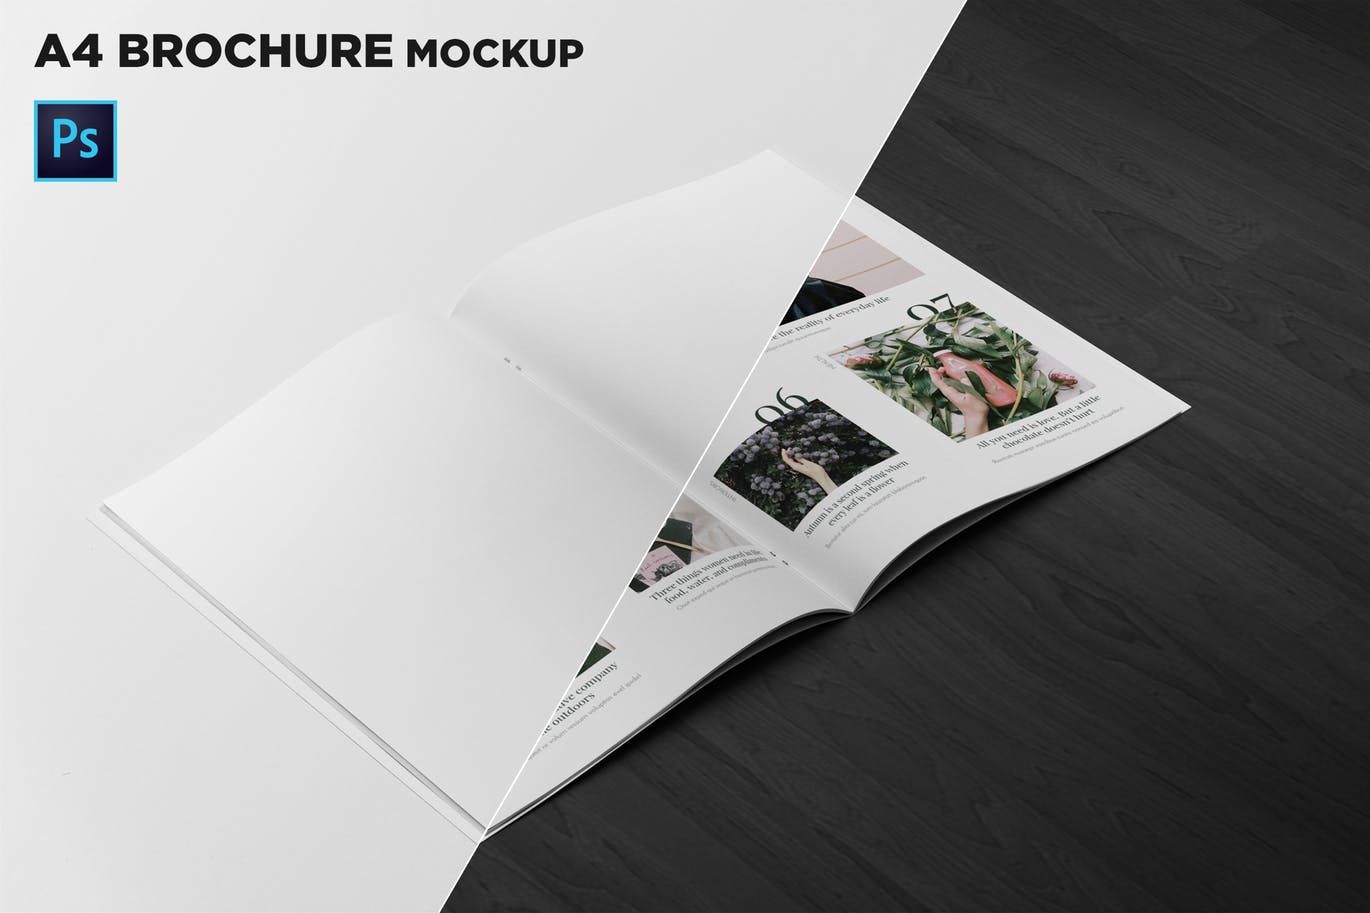 A4宣传小册子/企业画册内页版式设计45度角视图样机16设计网精选 A4 Brochure Mockup 2 Pages Spread插图